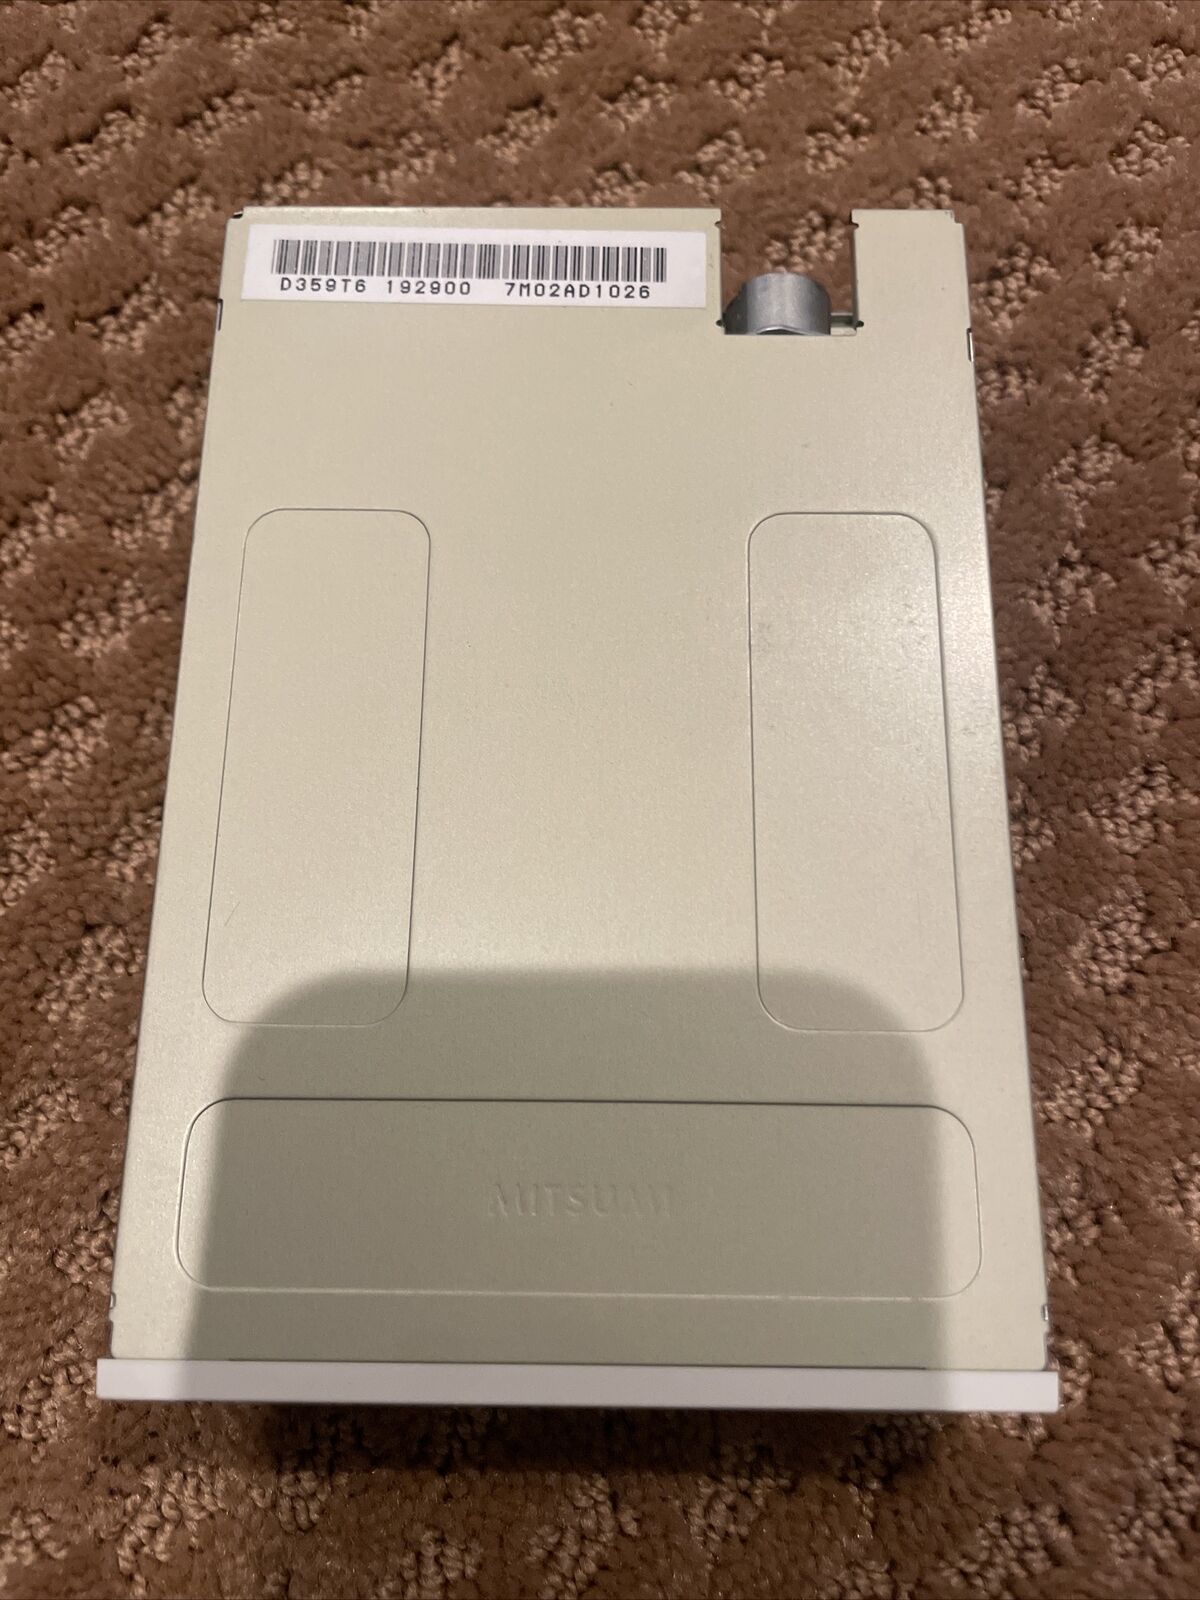 Vintage Newtronics Mitsumi D359T6 Floppy Drive 3.5\